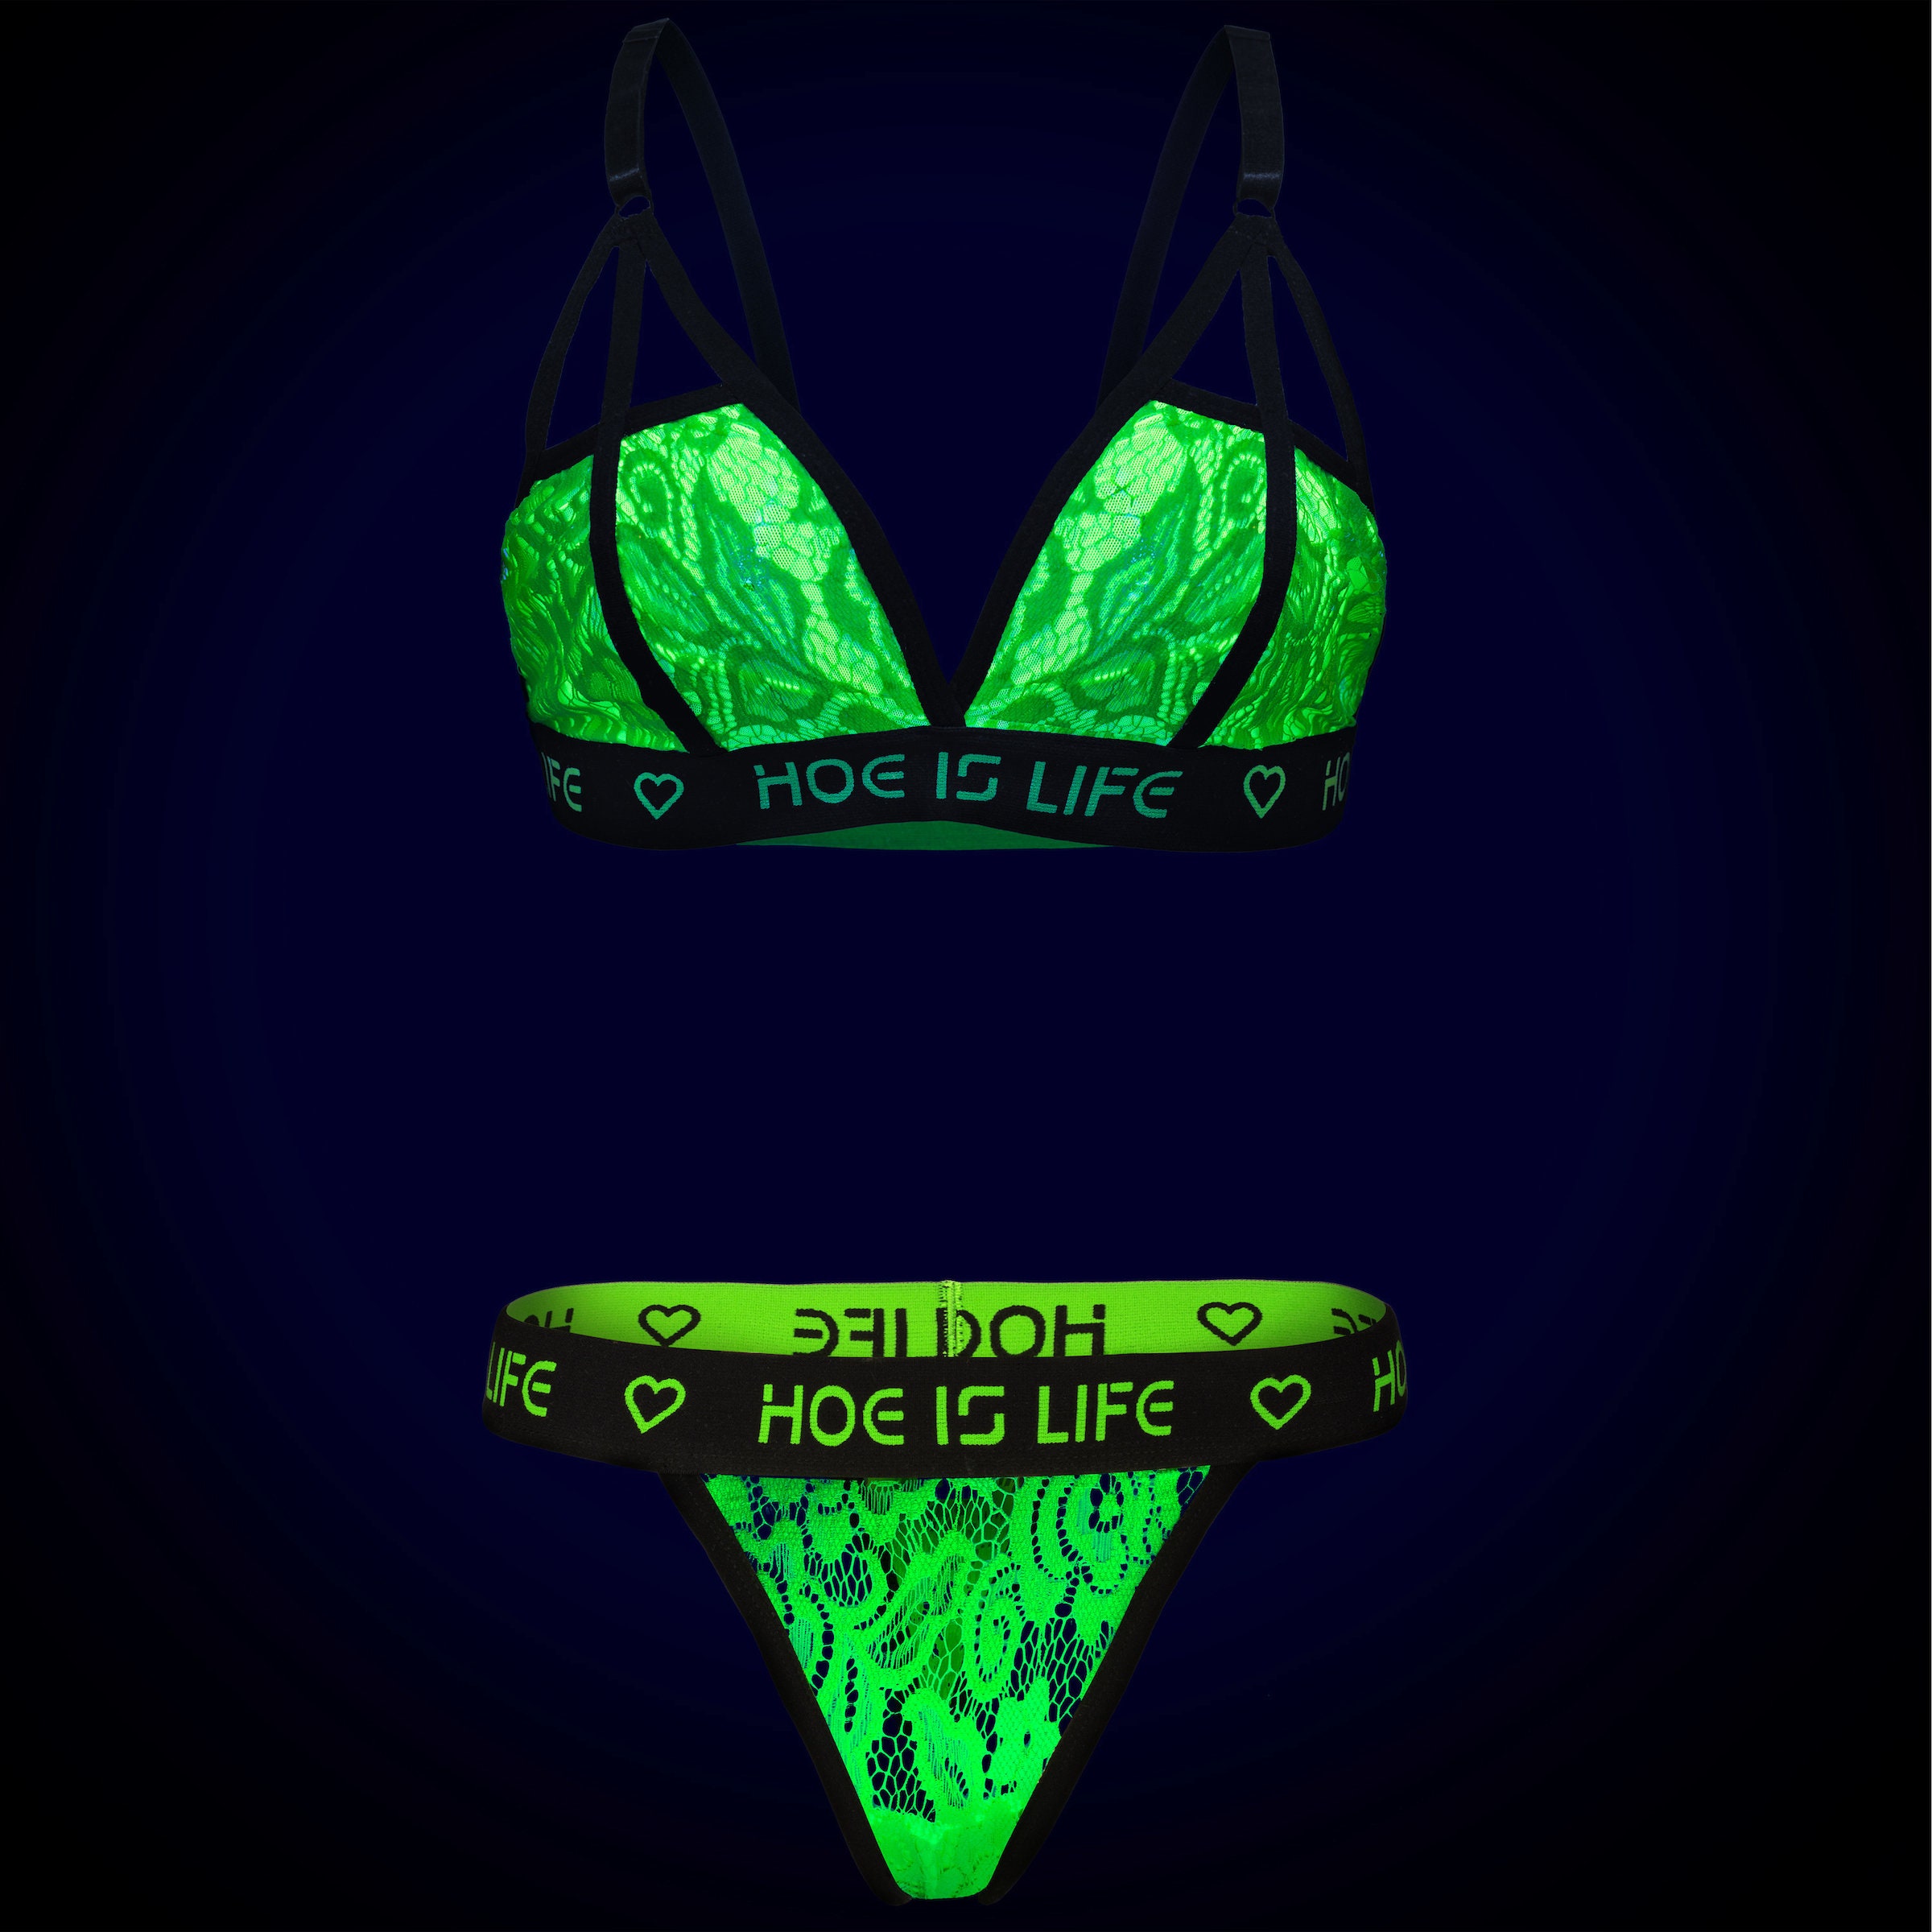 Buy Nivcy XX-Large Women Bra Panty Set Light Green Online at Best